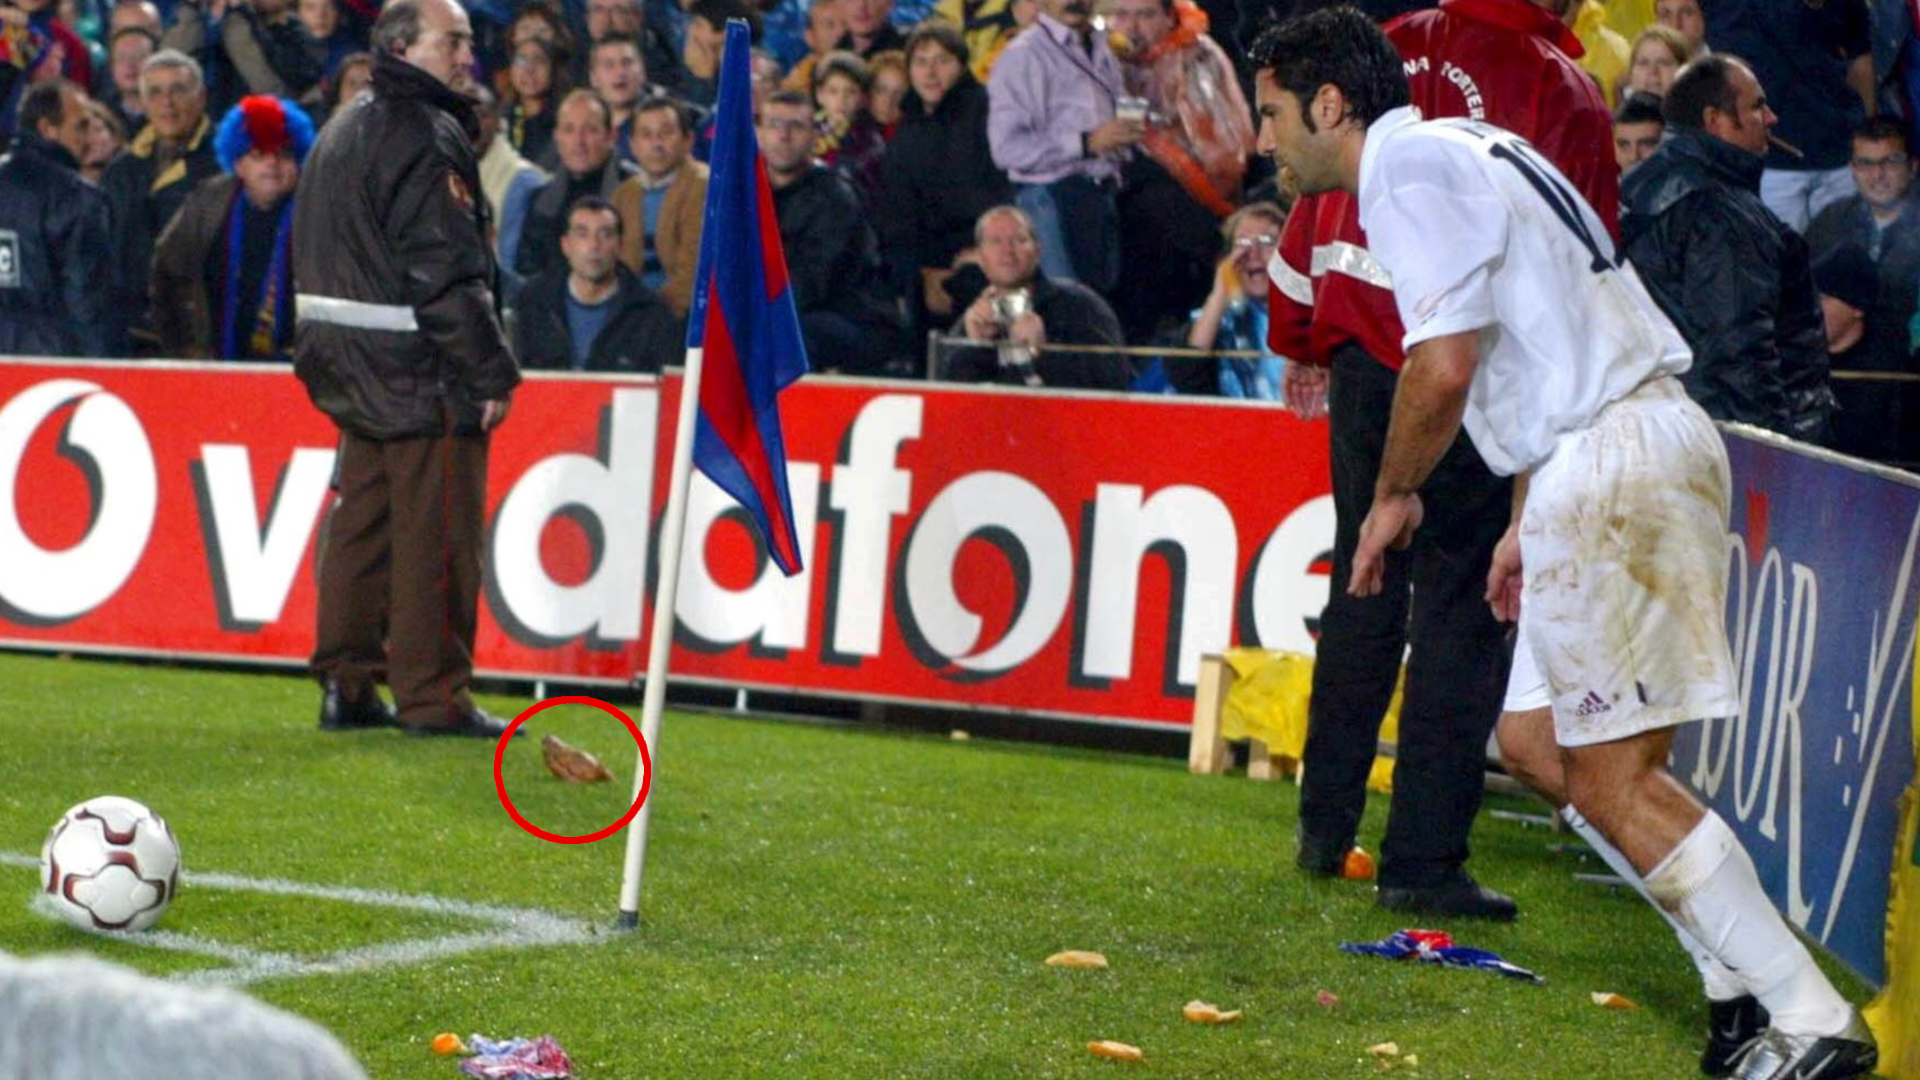 
                <strong>FC Barcelona vs. Real Madrid 2002/03</strong><br>
                Luis Figo wechselte im Sommer 2000 als Leistungsträger von Barcelona nach Madrid. Zwei Jahre später wurde er mit Hassgesängen und vor allem einigen Wurfobjekten in Katalonien begrüßt. Es flogen Whiskyflaschen und sogar ein Schweinekopf in die Richtung des Portugiesen. Das Spiel musste zwischenzeitlich für 15 Minuten unterbrochen werden, konnte aber fortgesetzt werden und endete weniger spektakulär 0:0. 
              